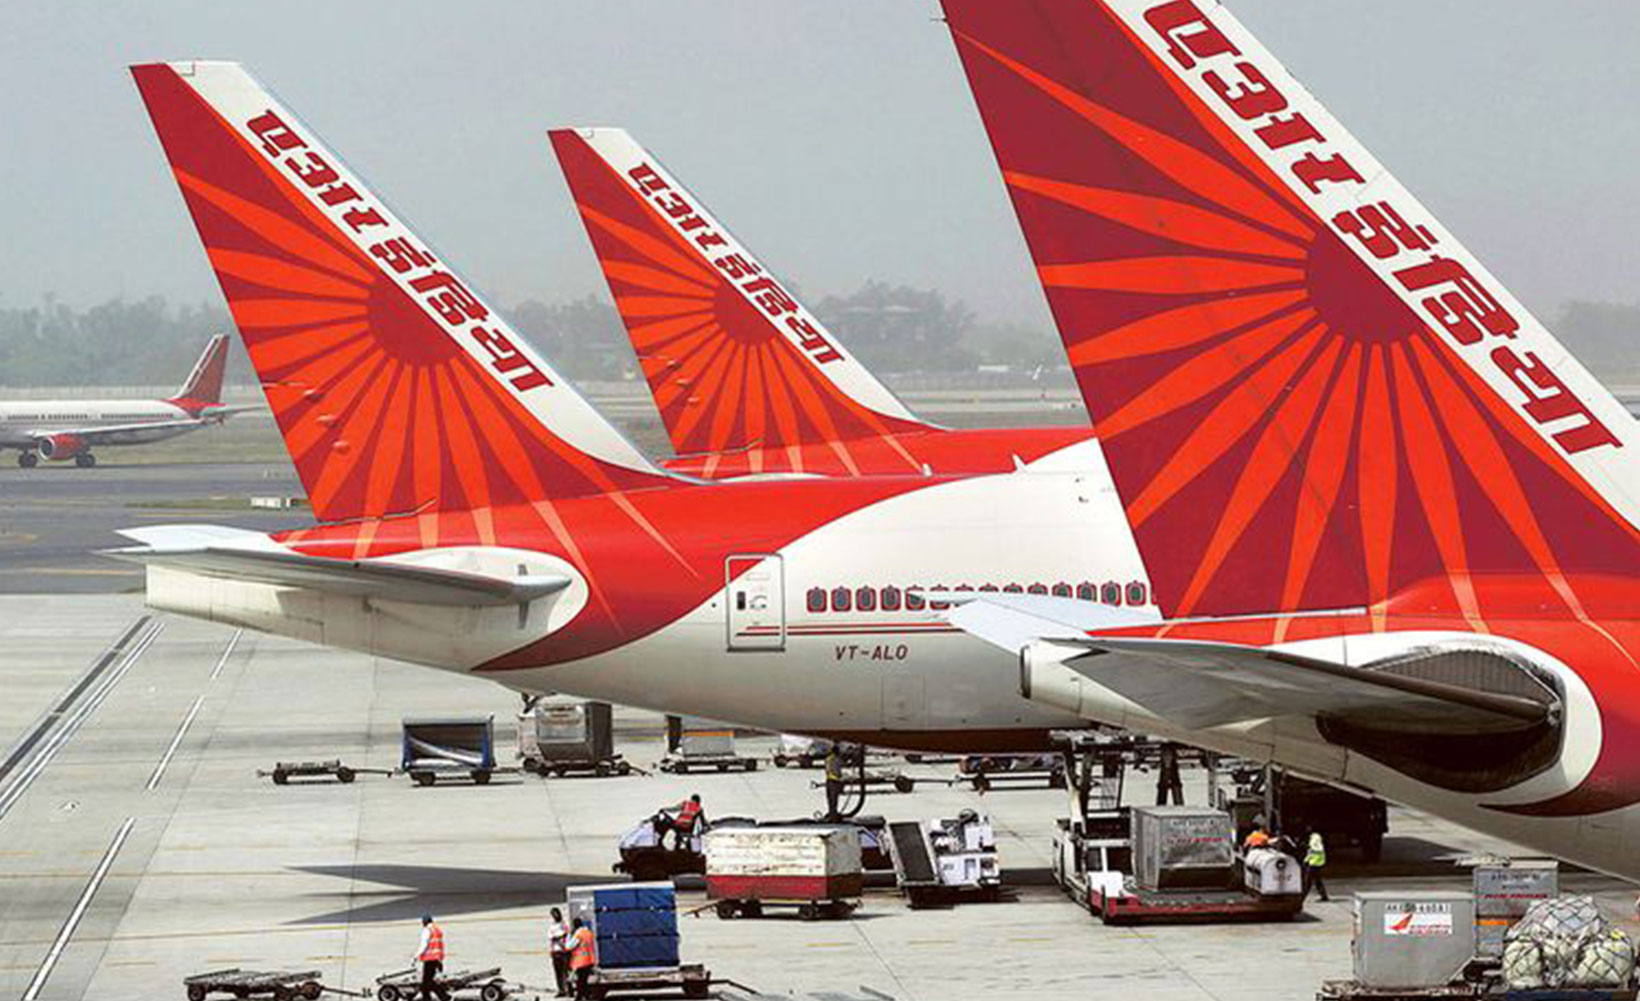 Air India удваивает количество рейсов на маршруте Тель-Авив-Нью-Дели, чтобы справиться с наплывом пассажиров